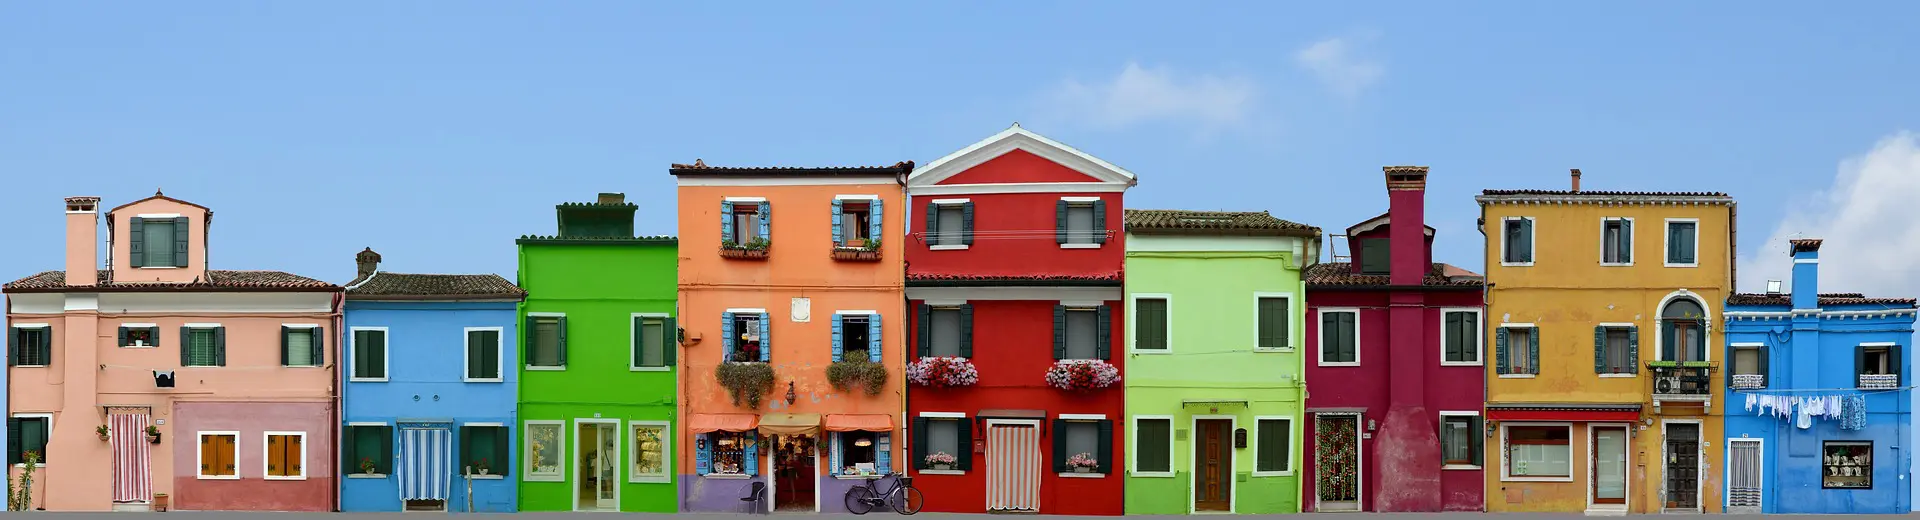 Venedig und die Inseln – Burano und Murano